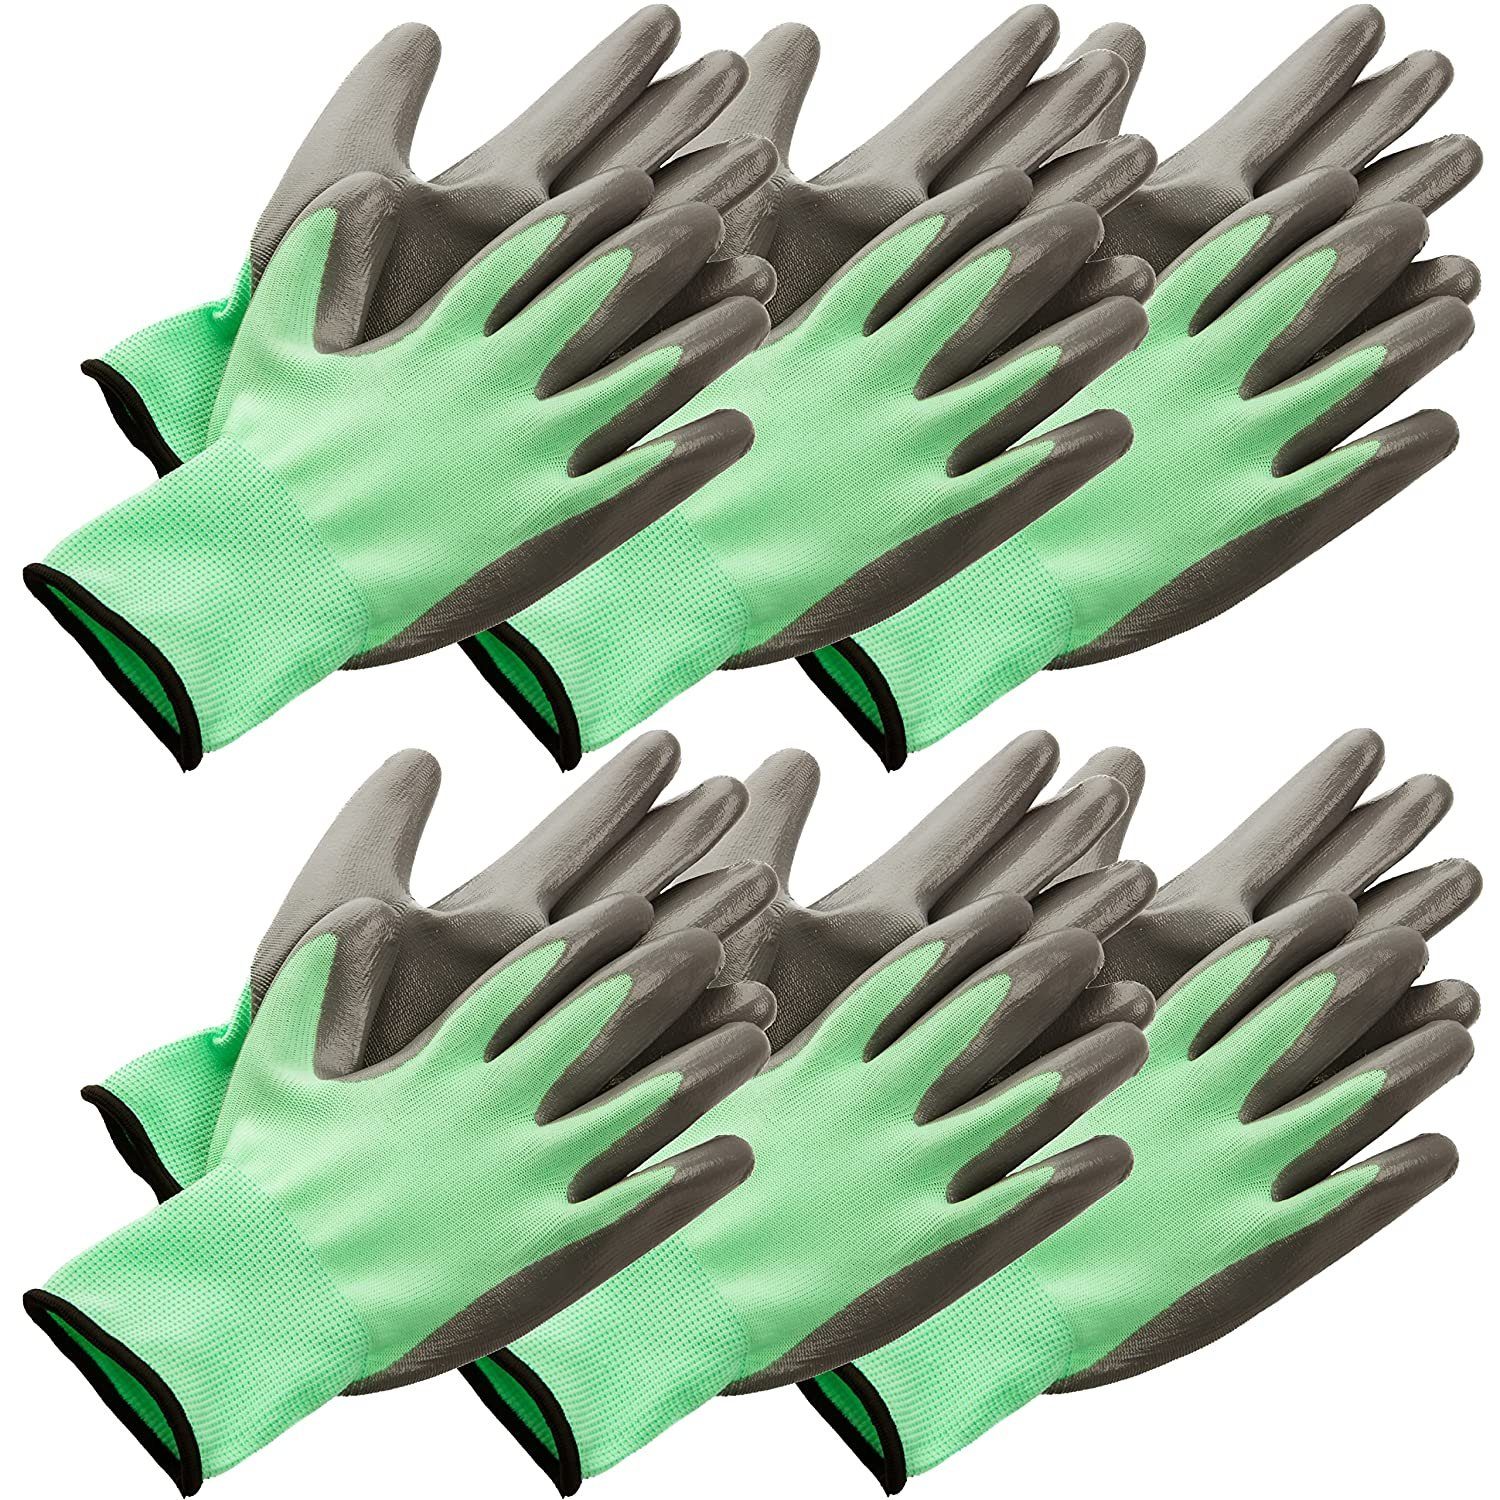 Centi Gartenhandschuhe 6 Arbeitshandschuhe Damen/Herren, Arbeitshandschuhe Gartenhandschuhe (Set, Gr. 8 Farbe Grün) Montagehandschuhe Handschuhe Schutzhandschuhe